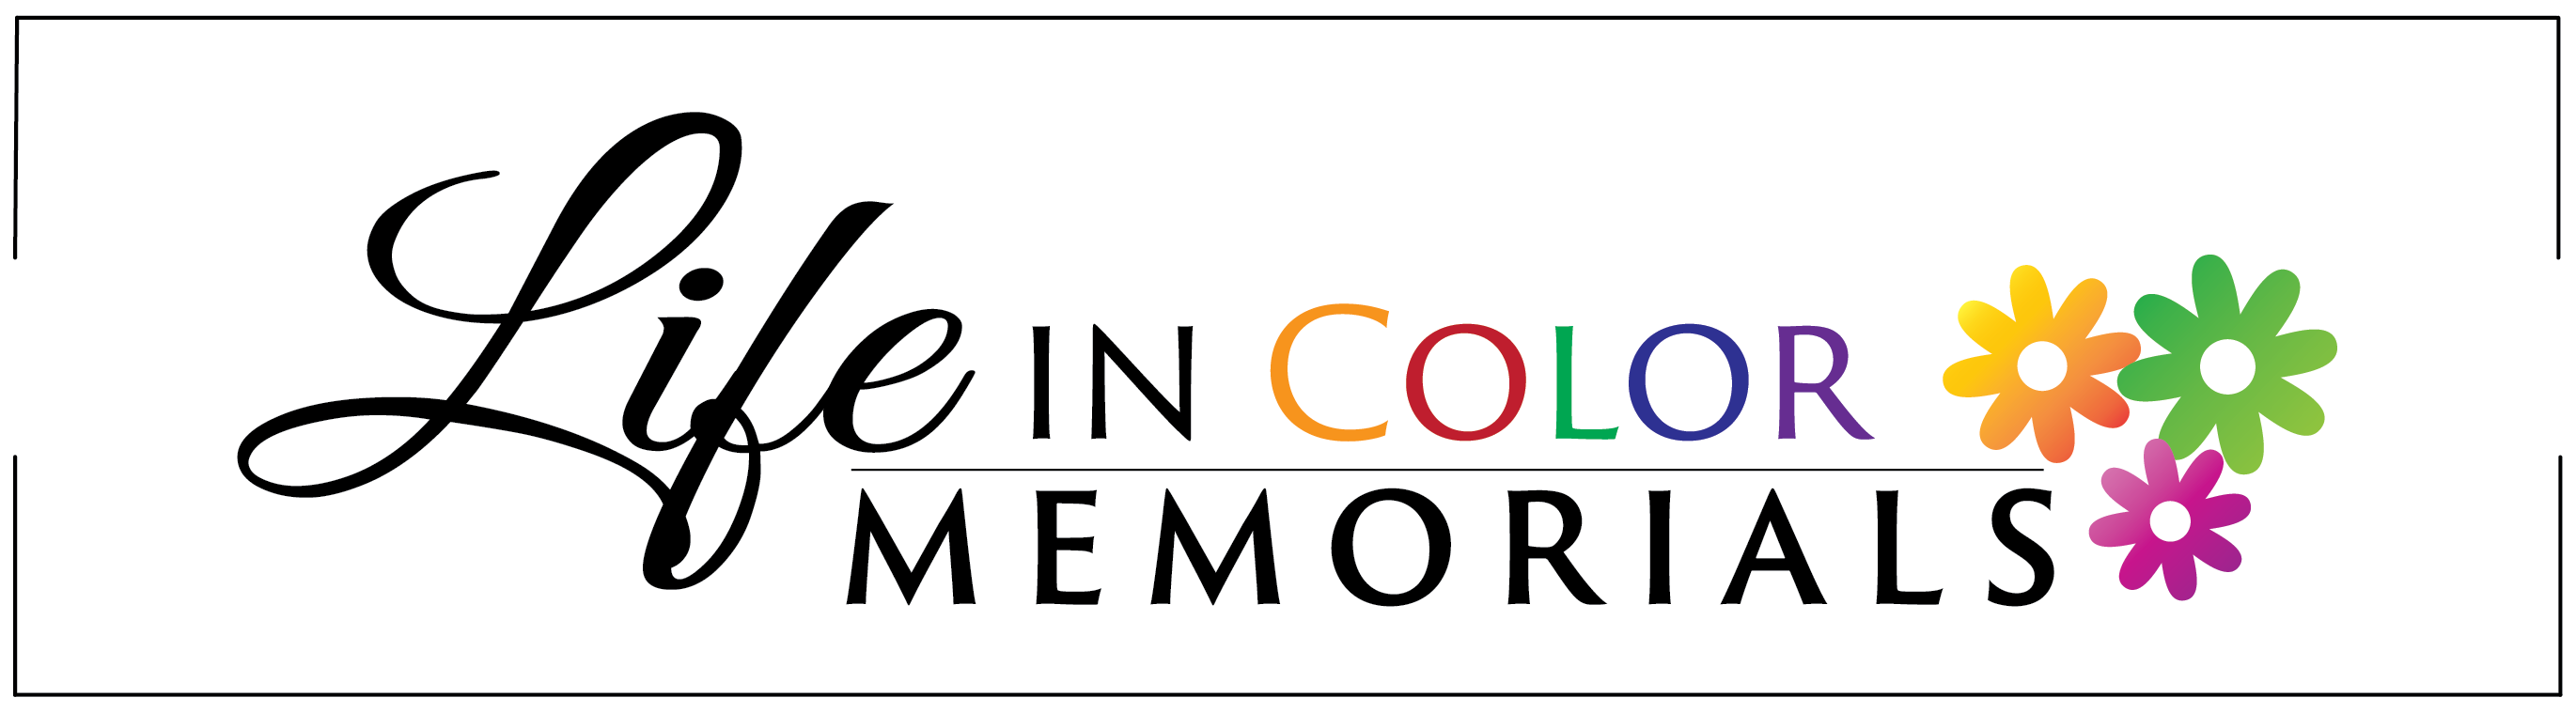 LIC_Memorials_logo_final